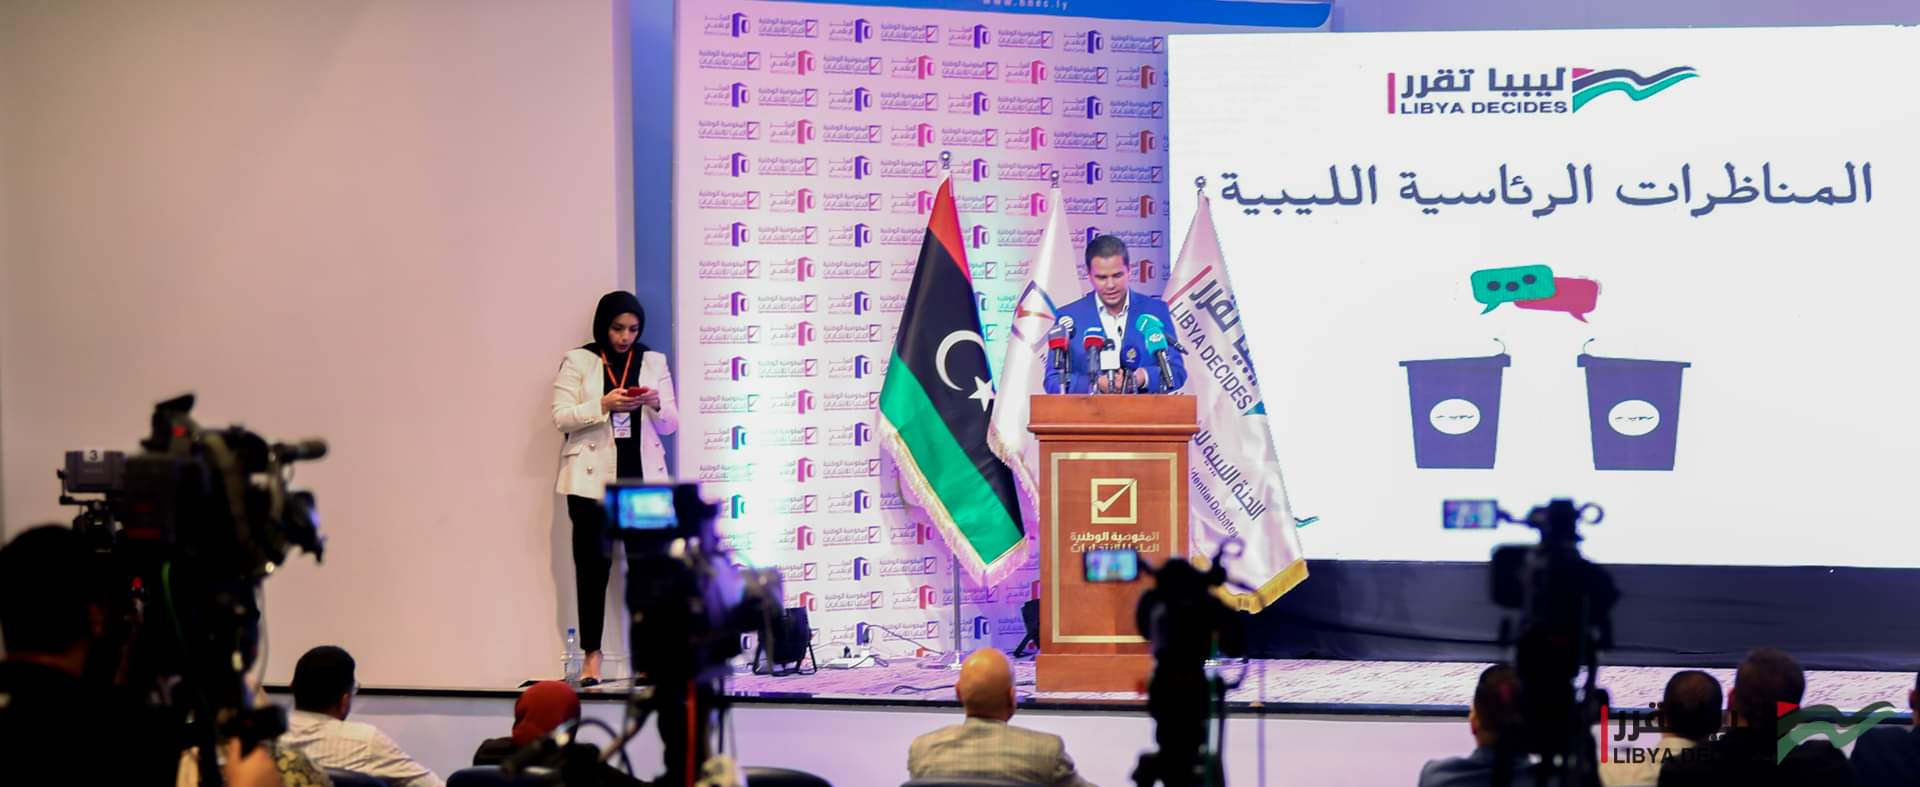 لأول مرة في تاريخ ليبيا .. انطلاق المناظرات الرئاسية تحت شعار 